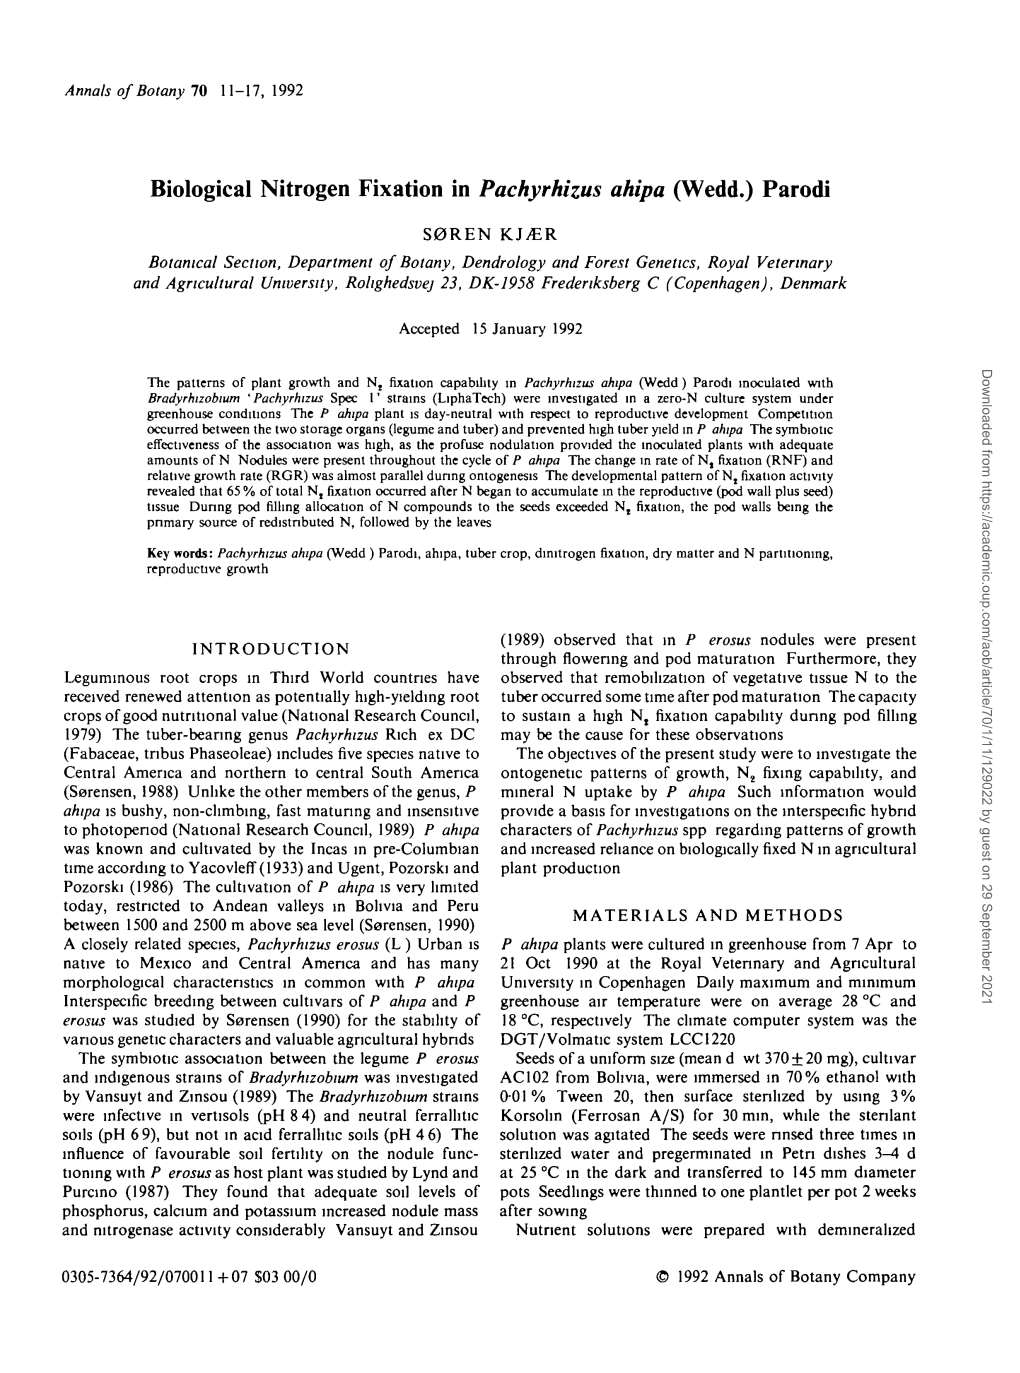 Biological Nitrogen Fixation in Pachyrhizus Ahipa (Wedd.) Parodi